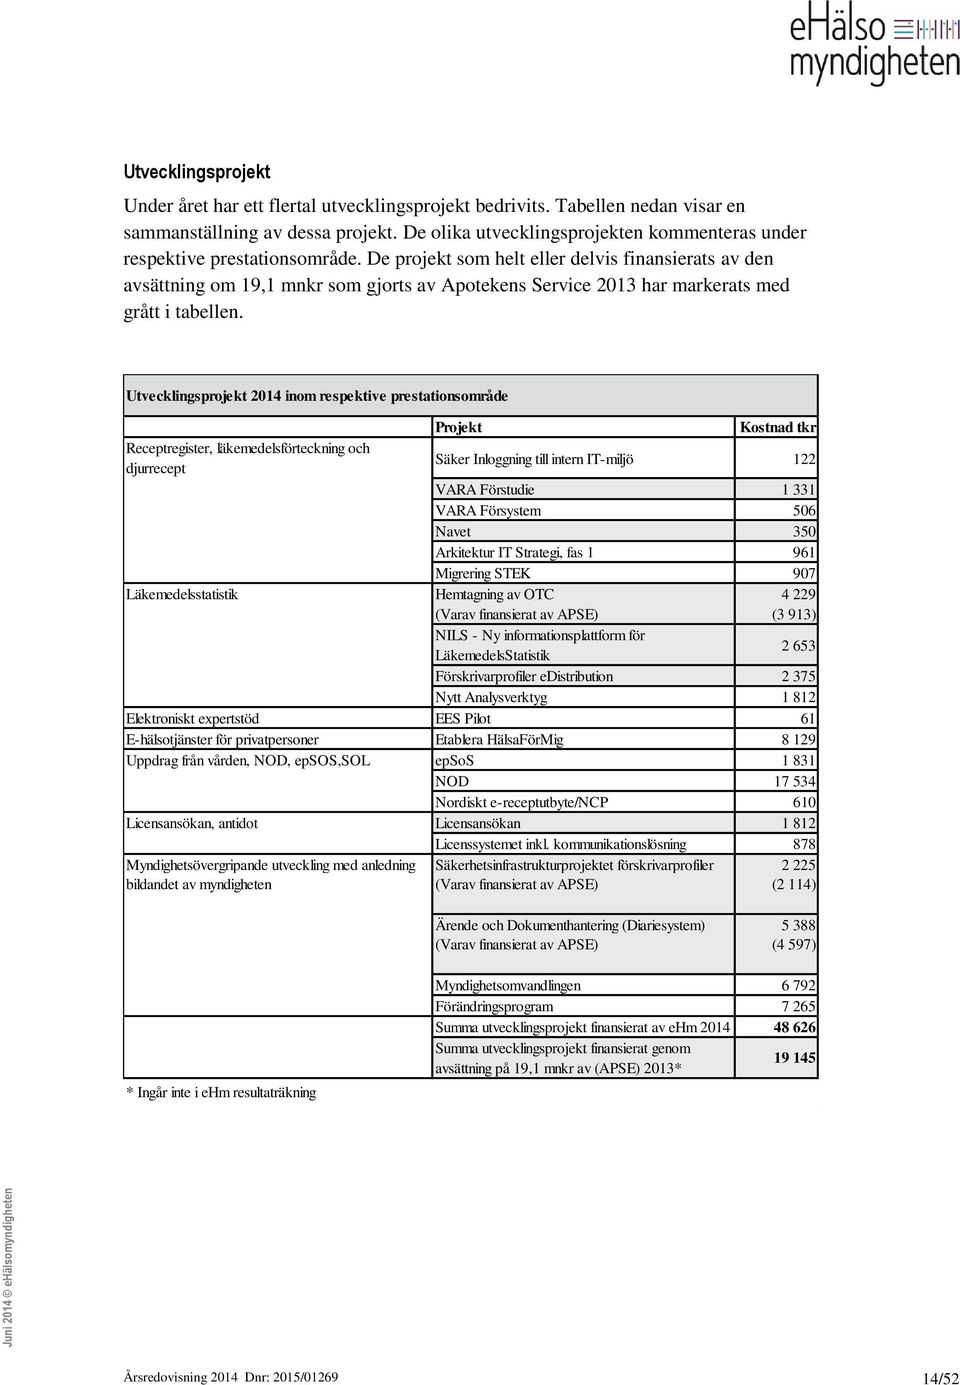 De projekt som helt eller delvis finansierats av den avsättning om 19,1 mnkr som gjorts av Apotekens Service 2013 har markerats med grått i tabellen.